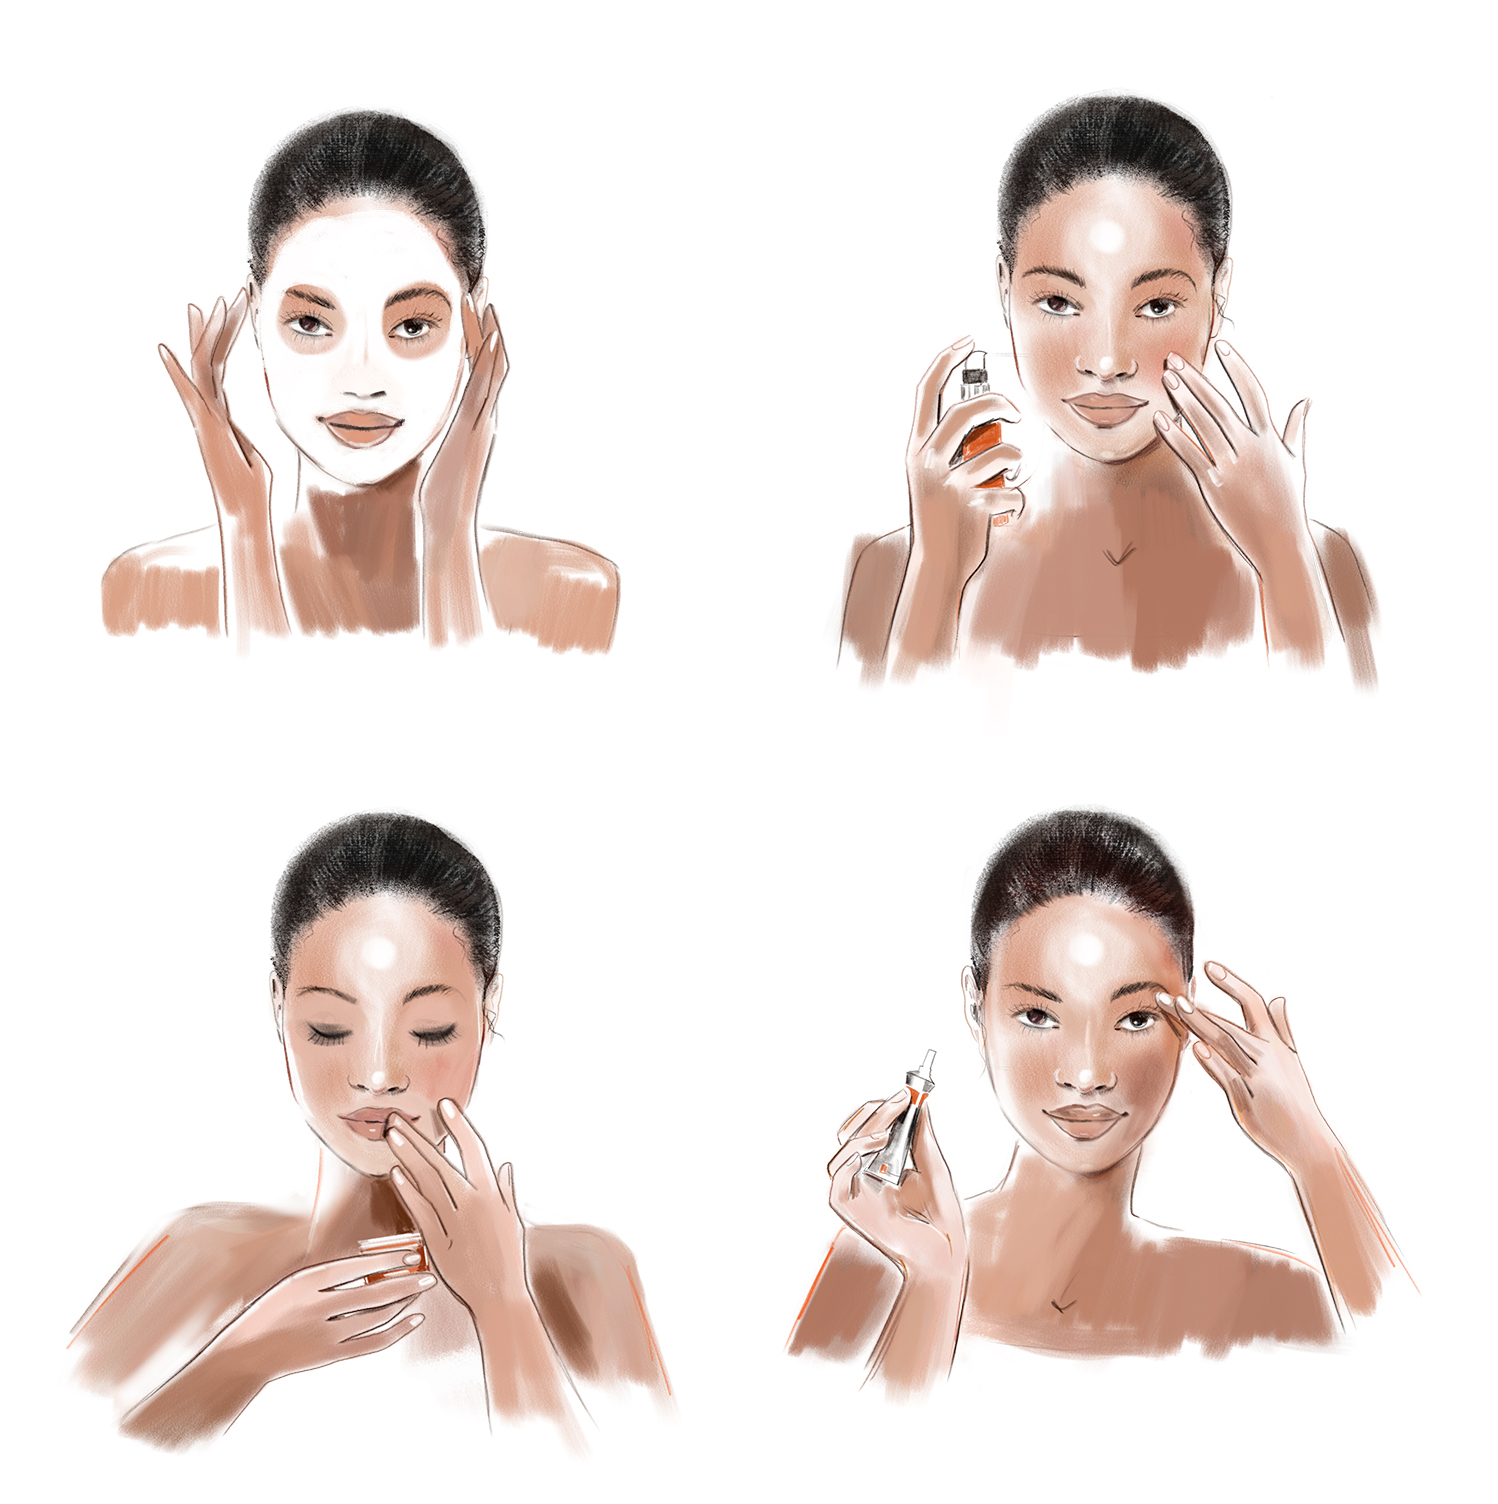 Makeup Illustration